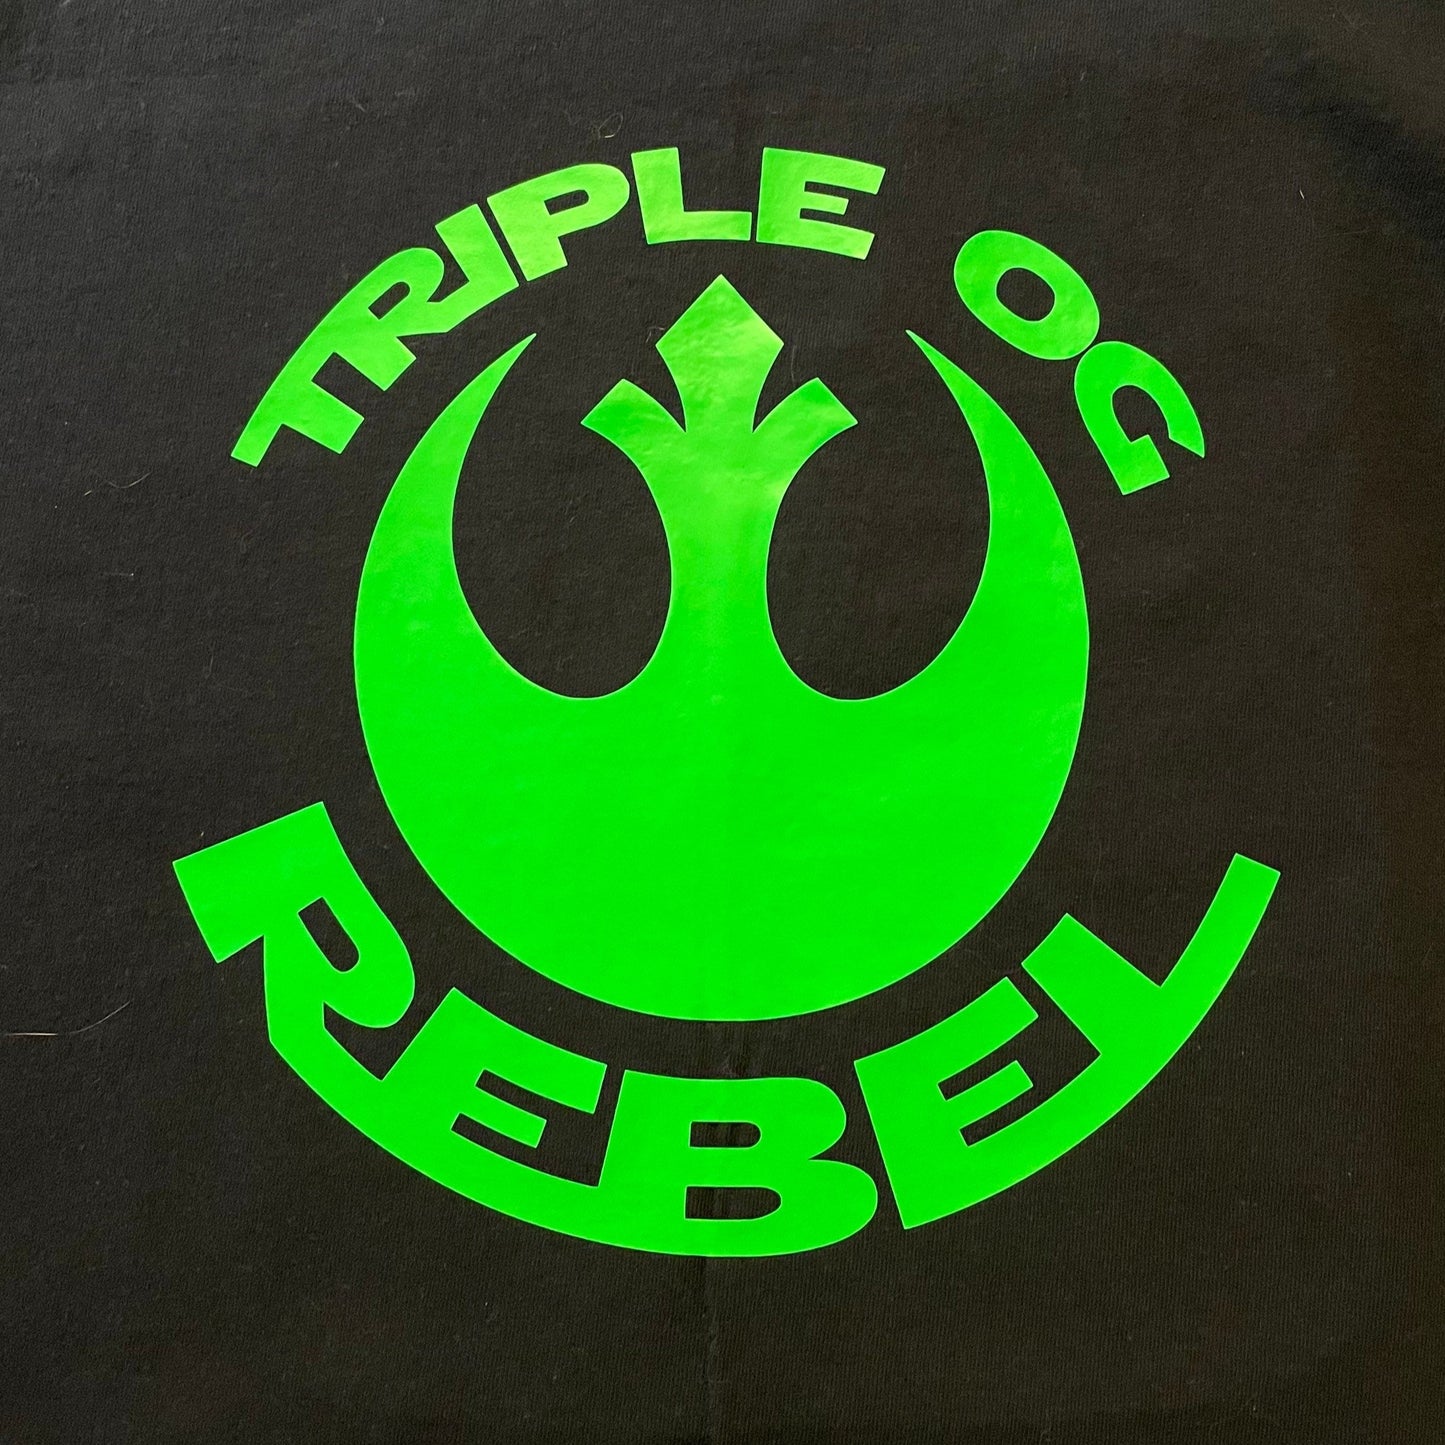 Triple OG Rebel Iron-On Heat Transfer Vinyl - Decal Only